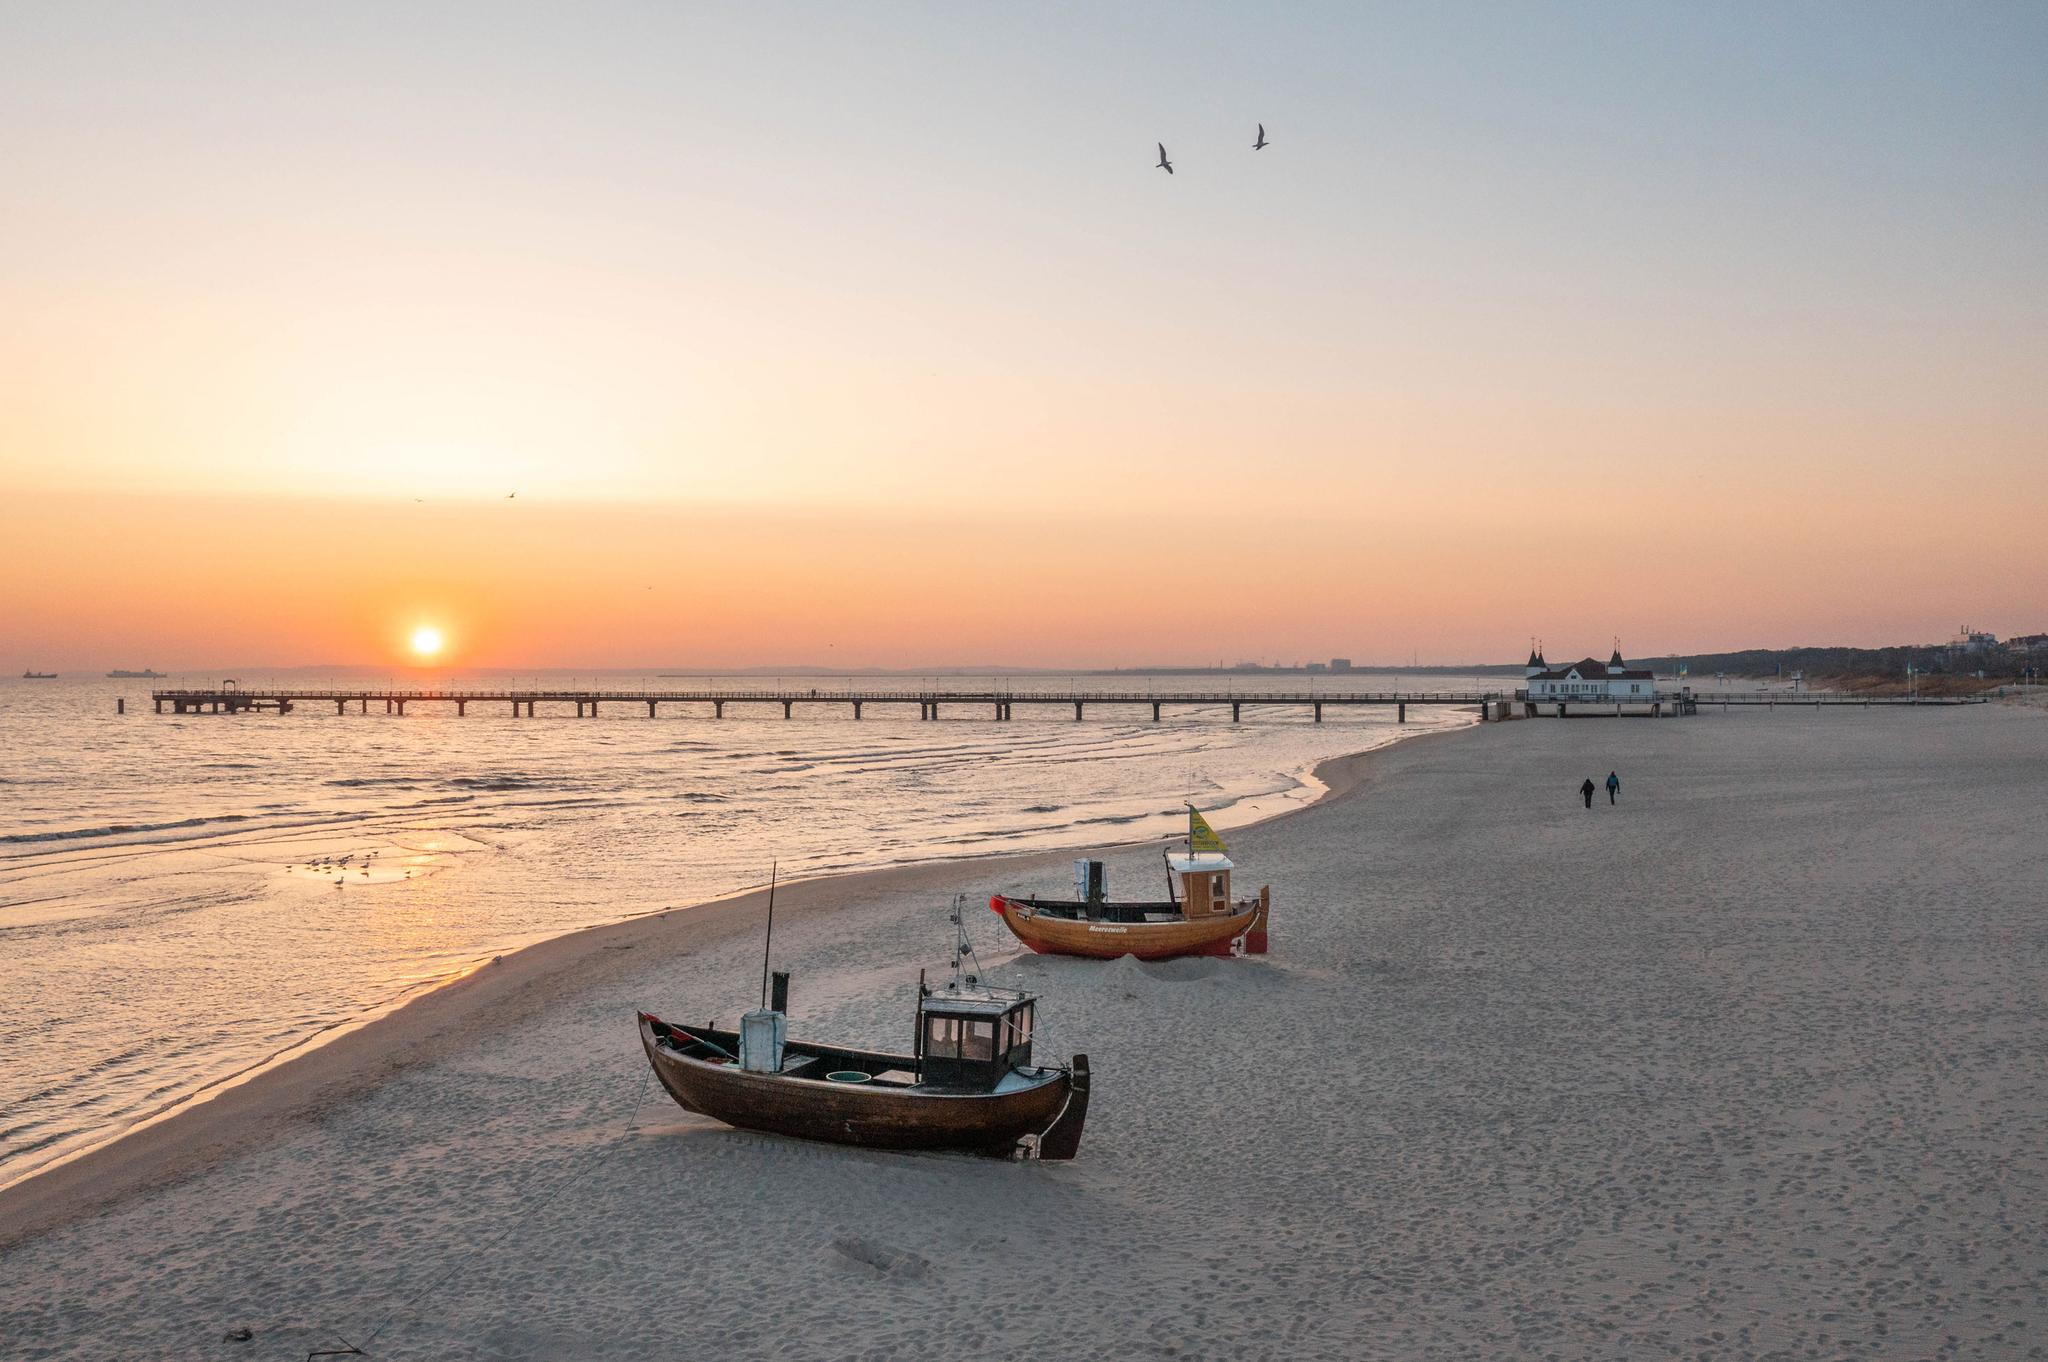 Am Strand von Ahlbeck liegen 2 Fischerboot und im Hintergrund ragt die Seebrücke in die Ostsee hinaus.